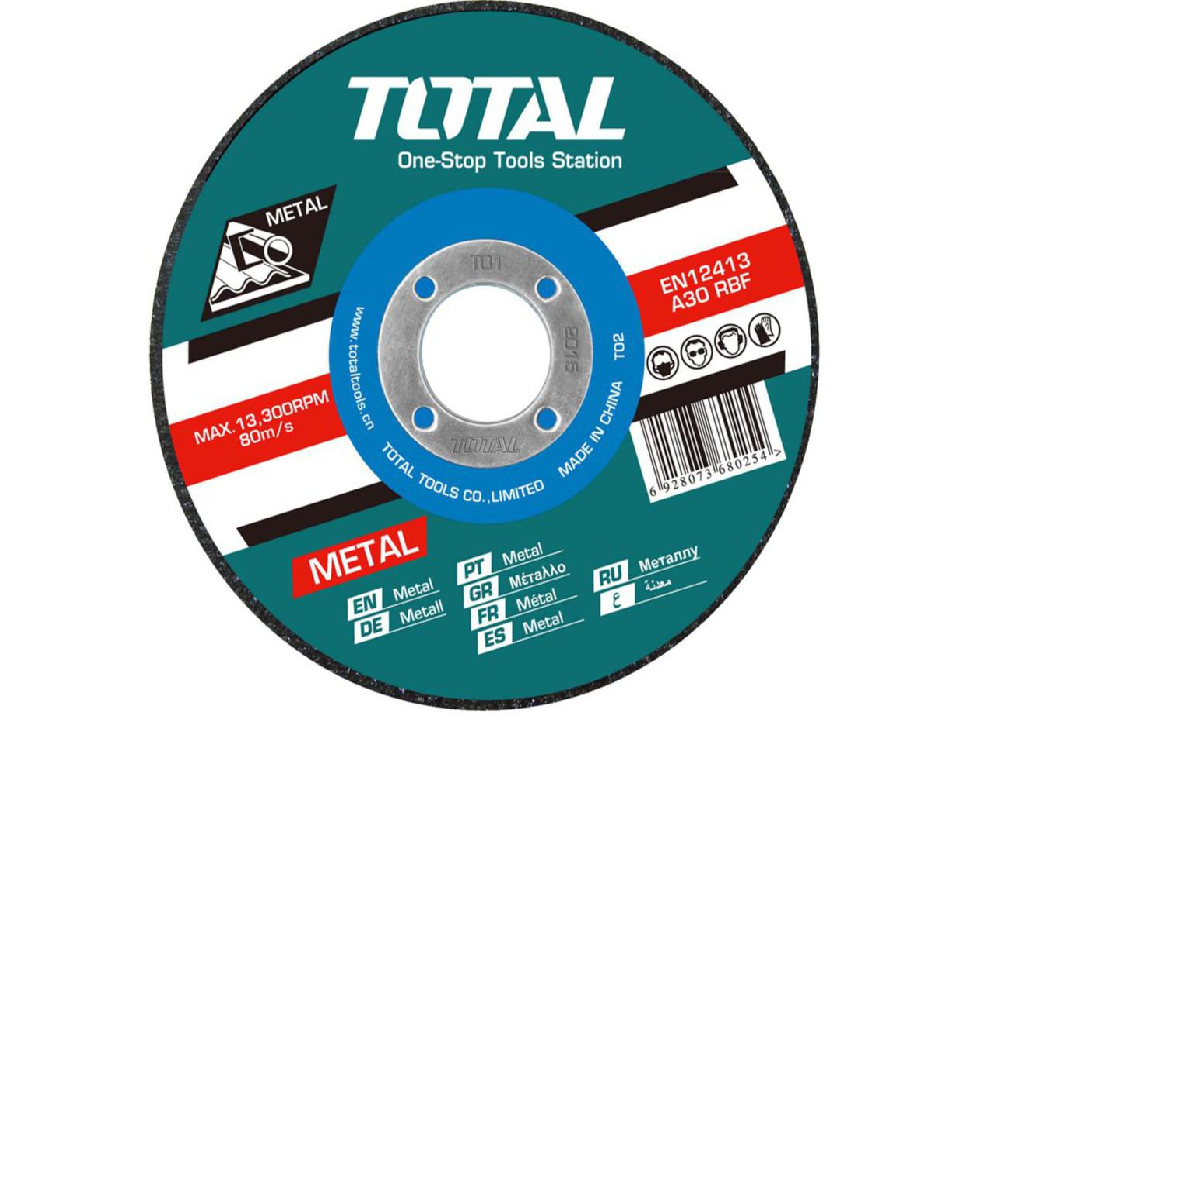 Total δίσκος κοπής μετάλλου 355 Χ 3mm (TAC2213551)